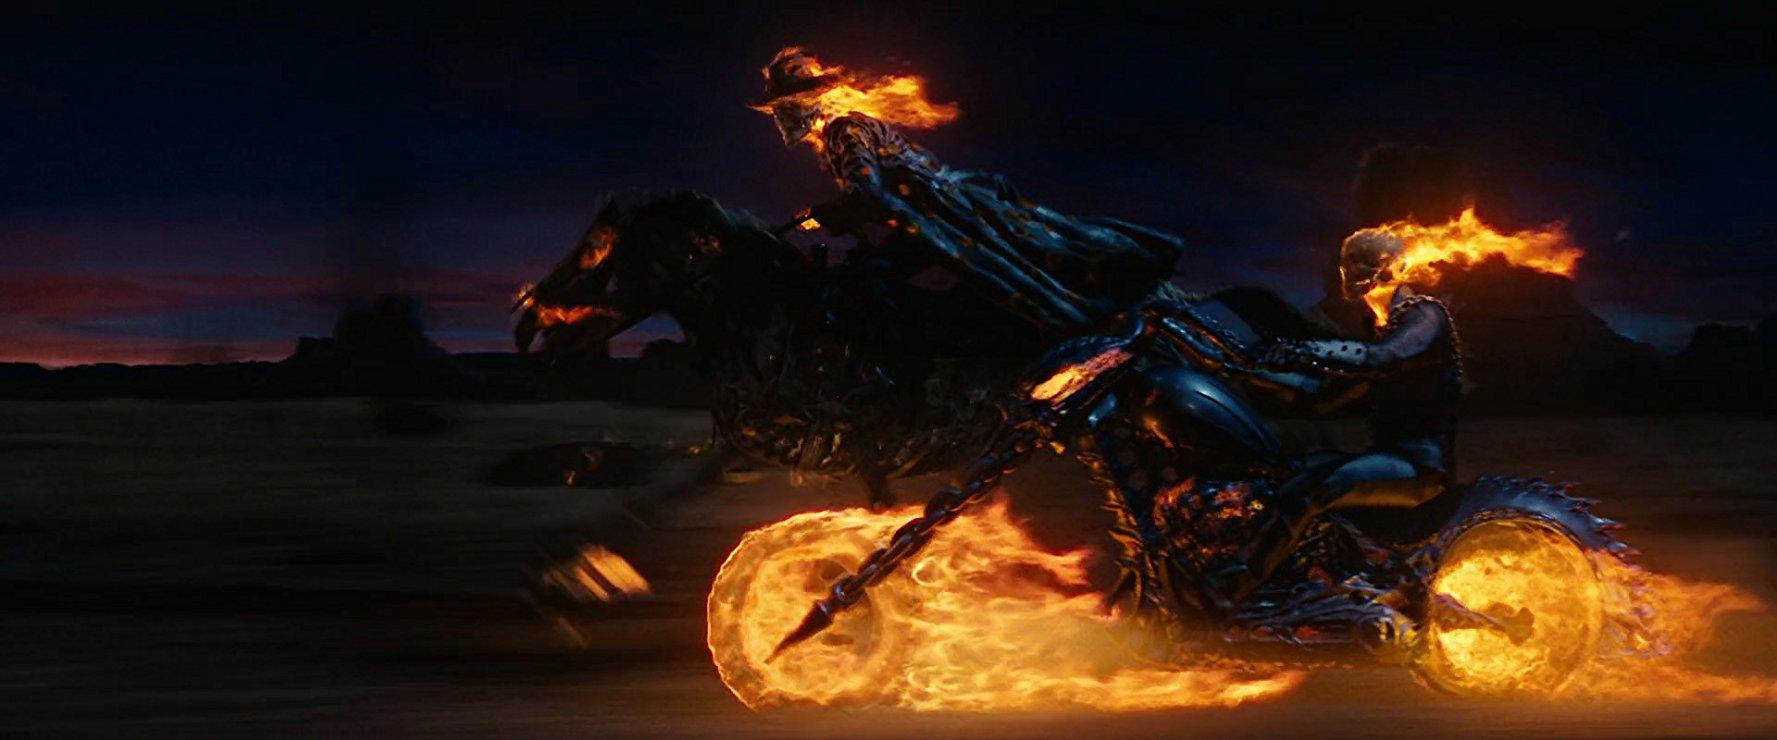 مشاهدة فيلم Ghost Rider 2007 مترجم HD اون لاين